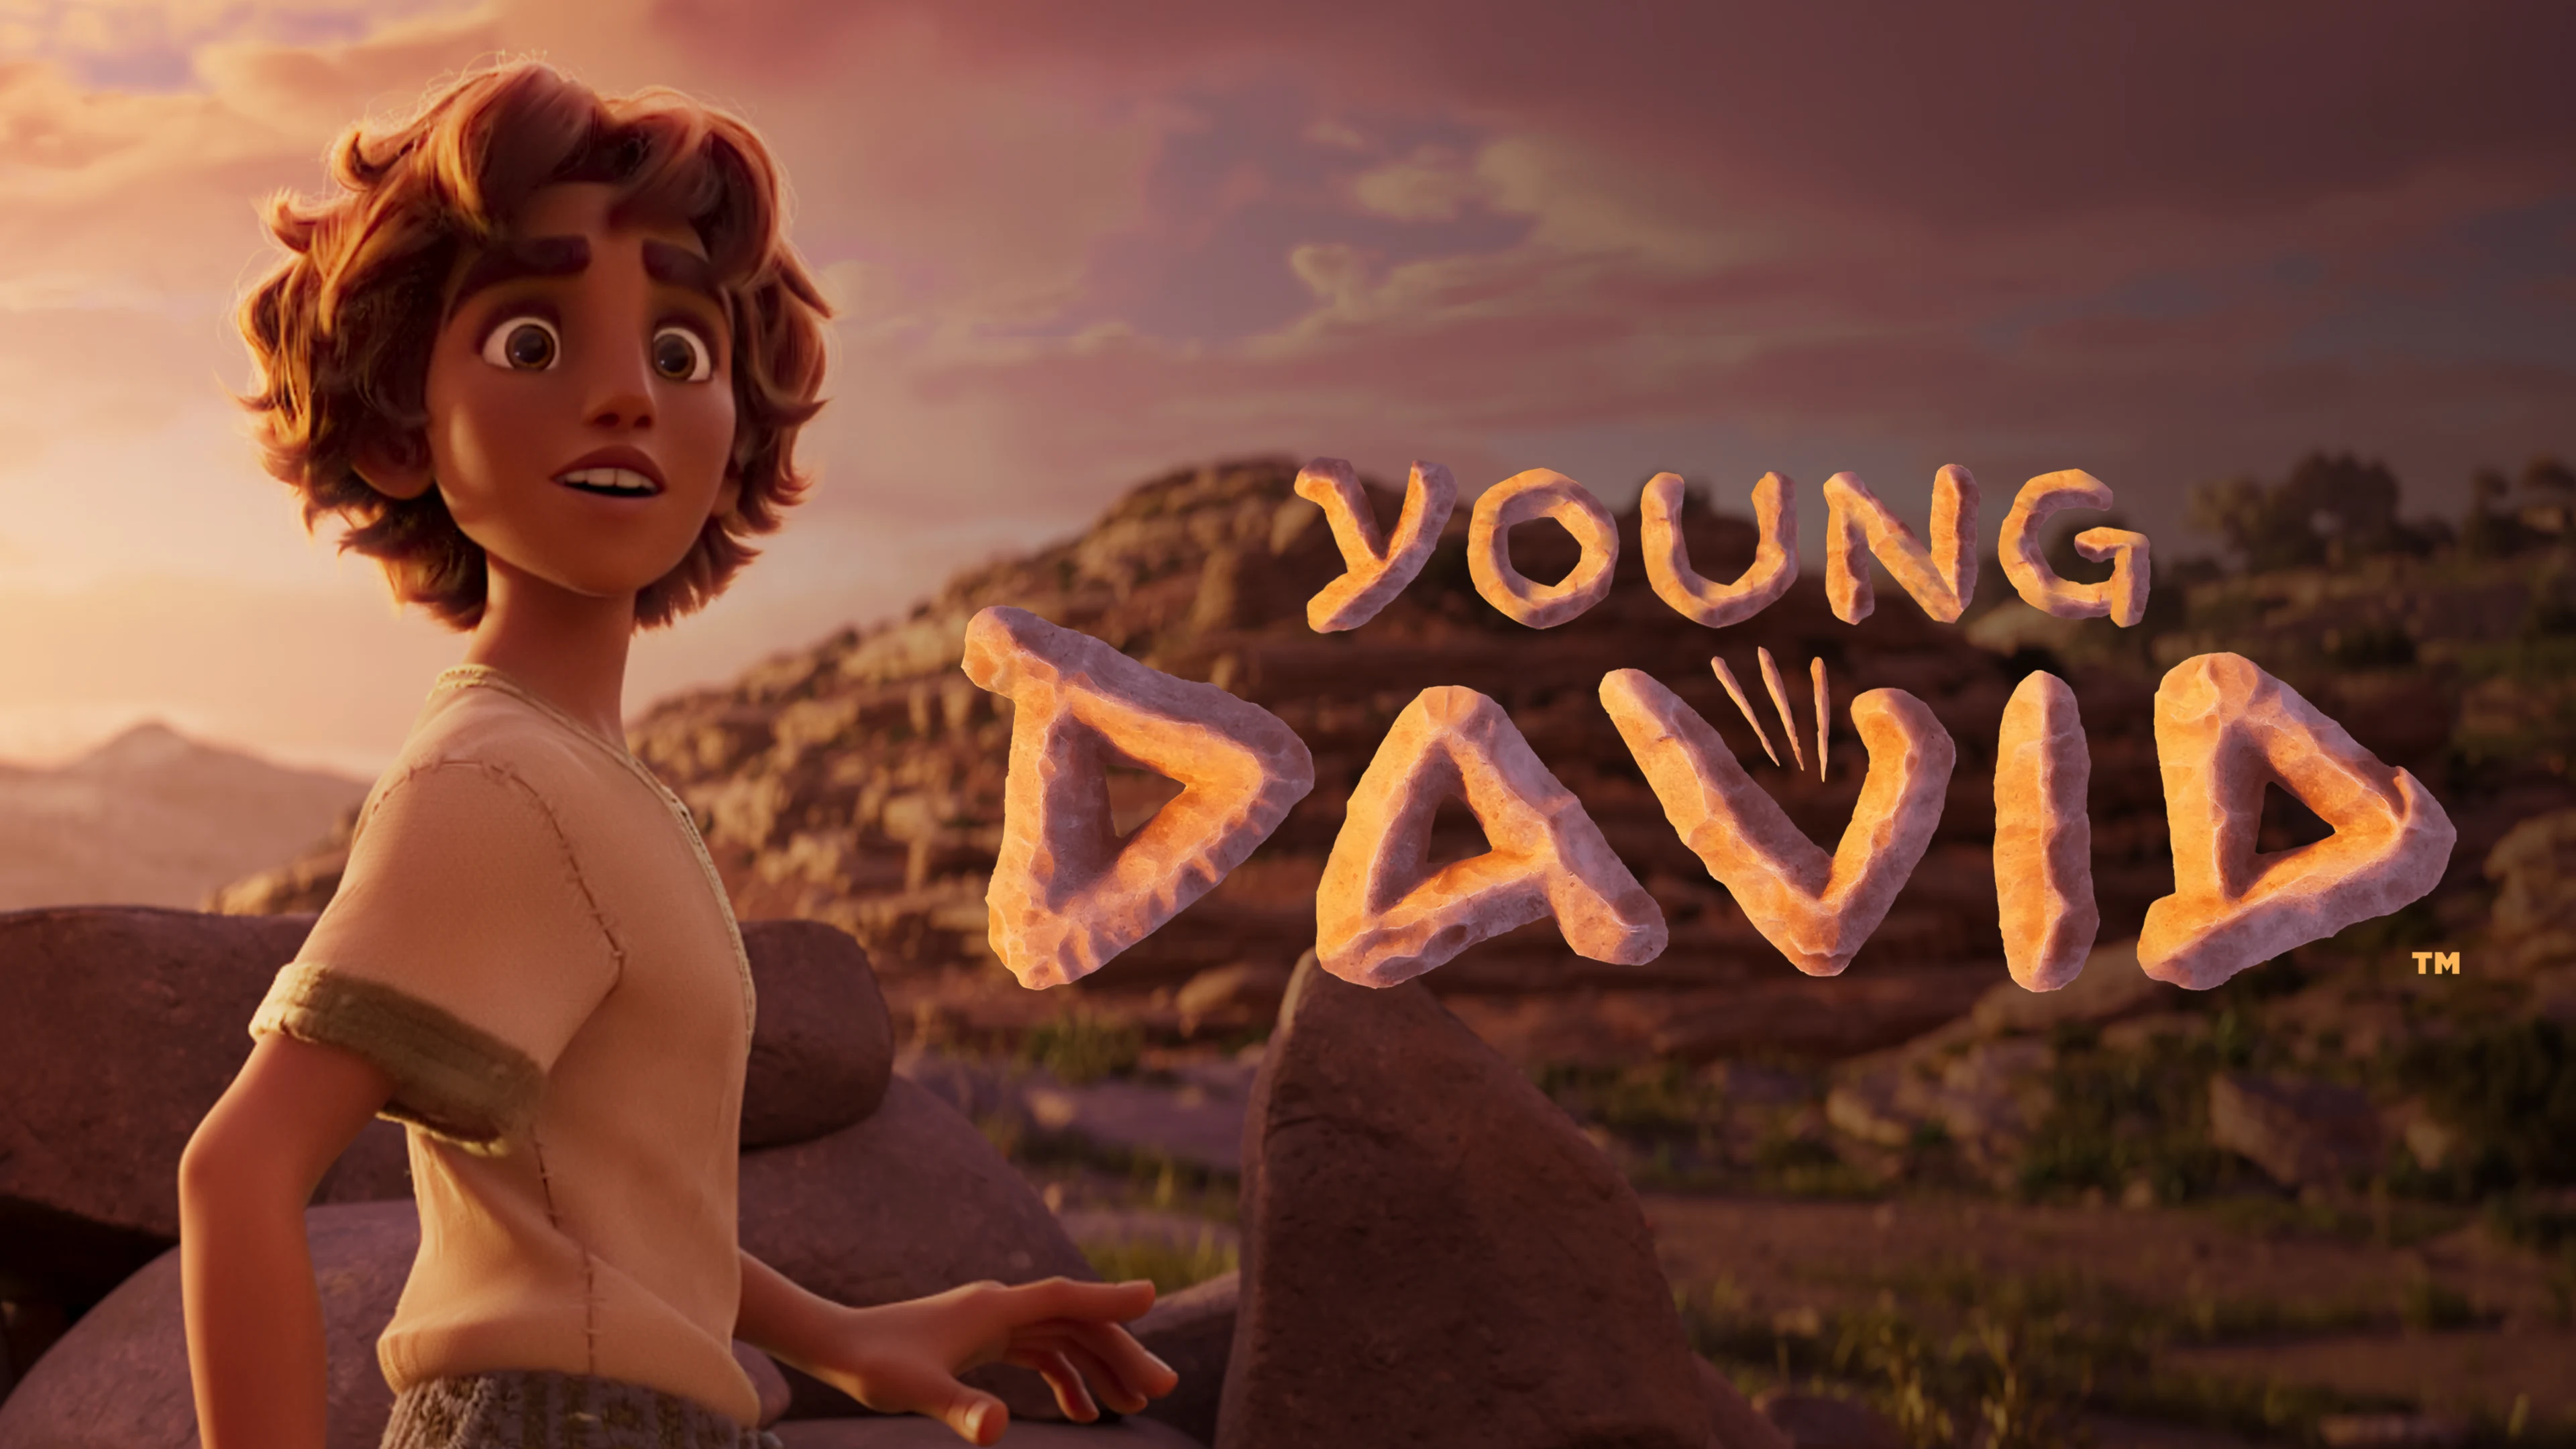 Young David